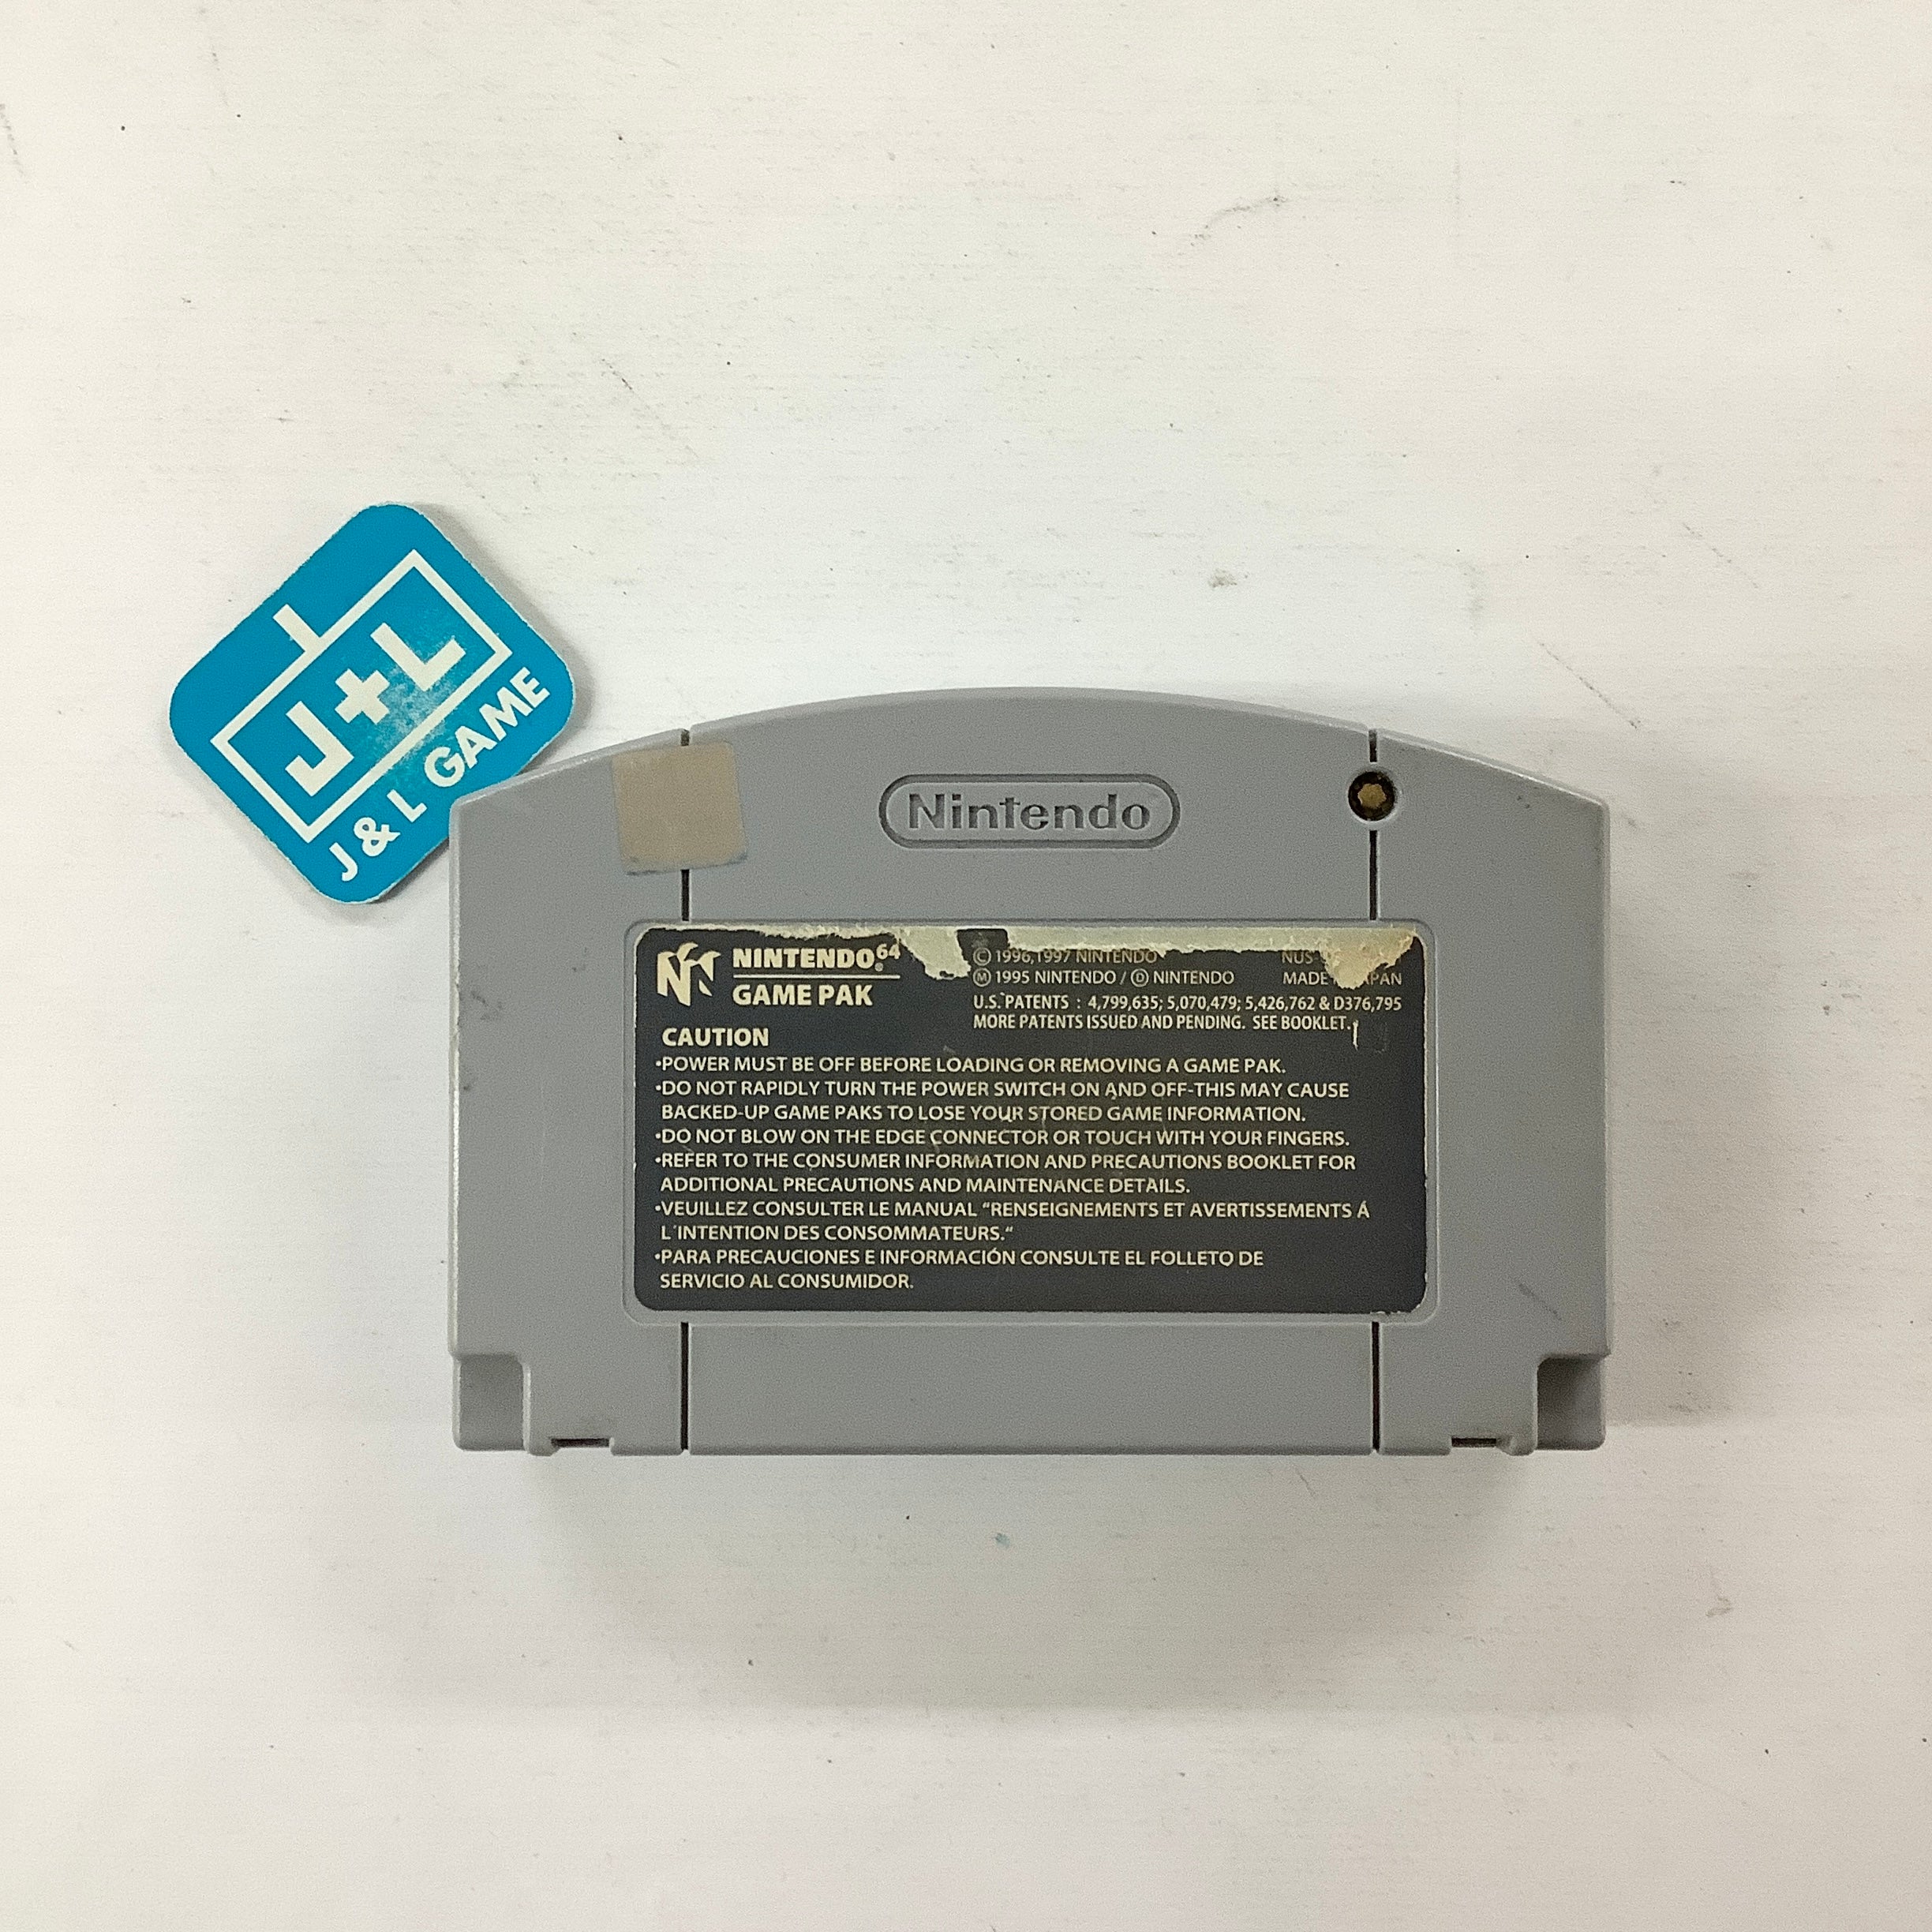 Wheel of Fortune - (N64) Nintendo 64 [Pre-Owned] Video Games GameTek   